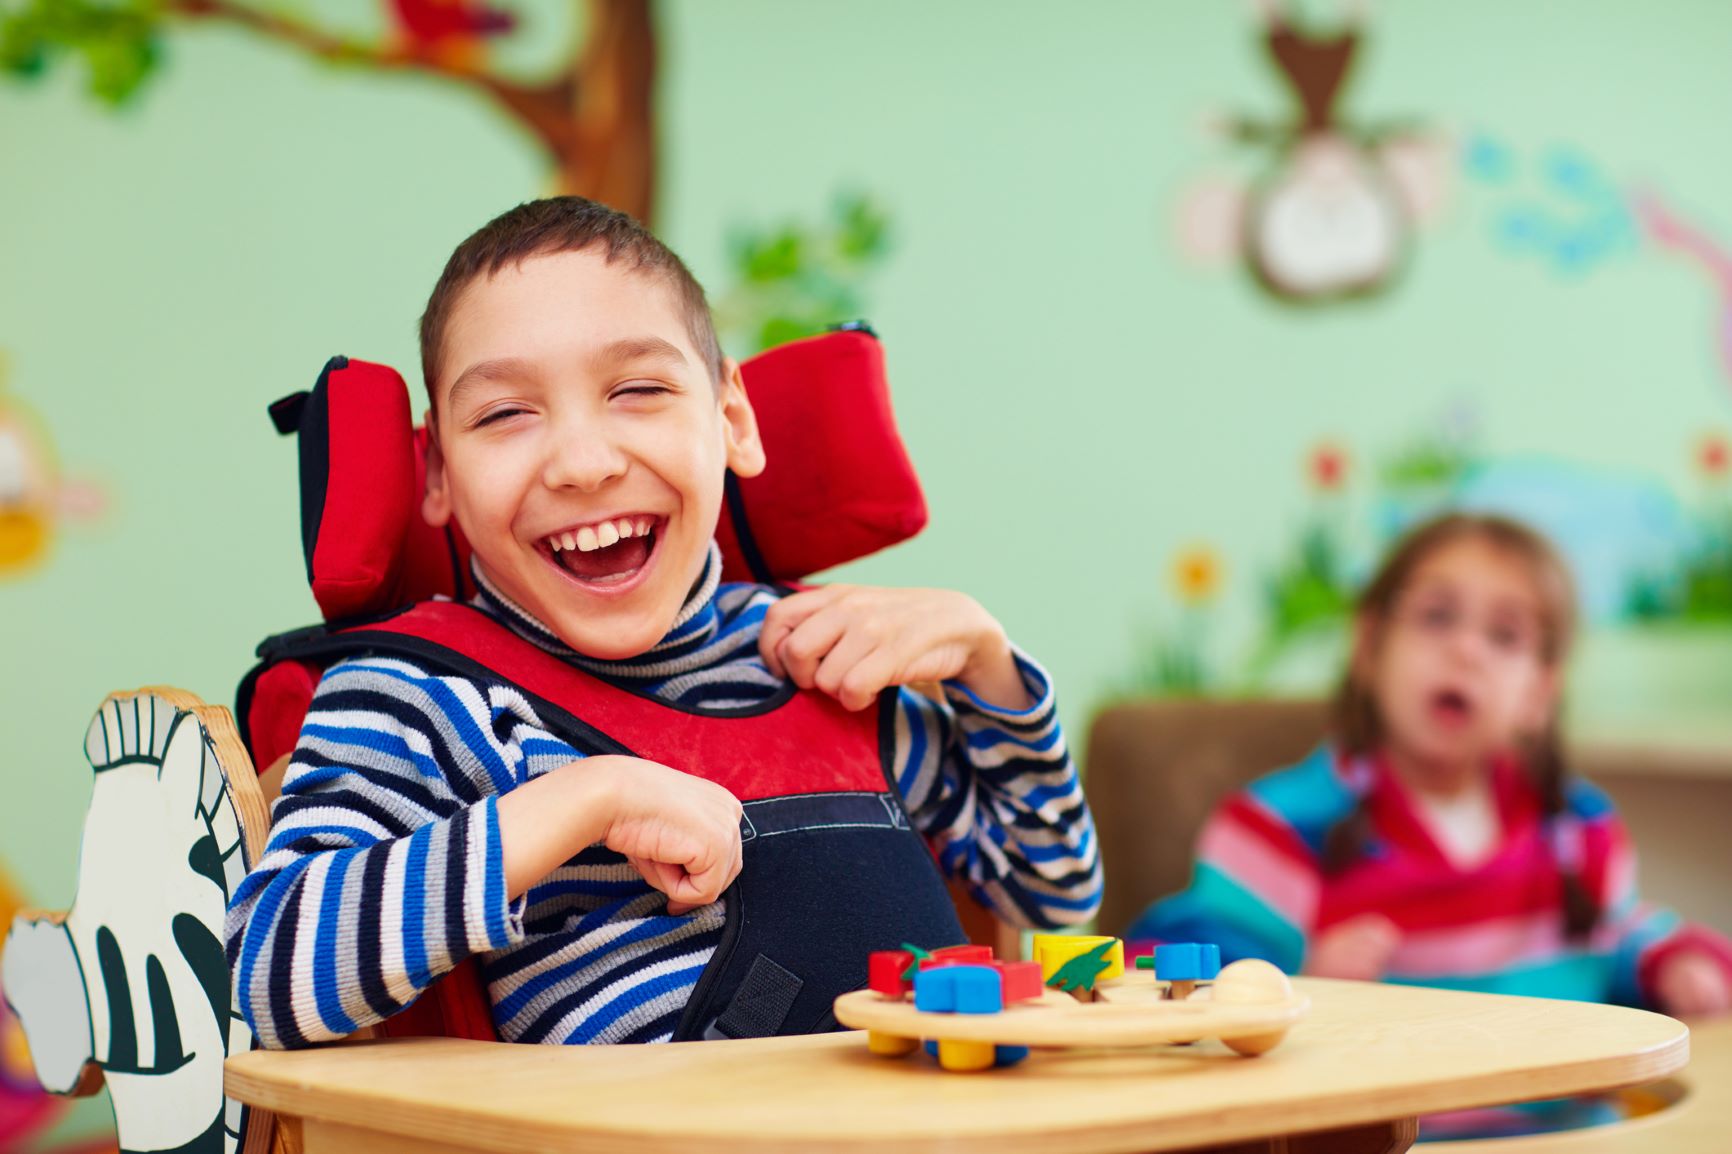 Iloinen, nauravainen vammainen poika istuu tuolissa ja leikkii palikoilla.